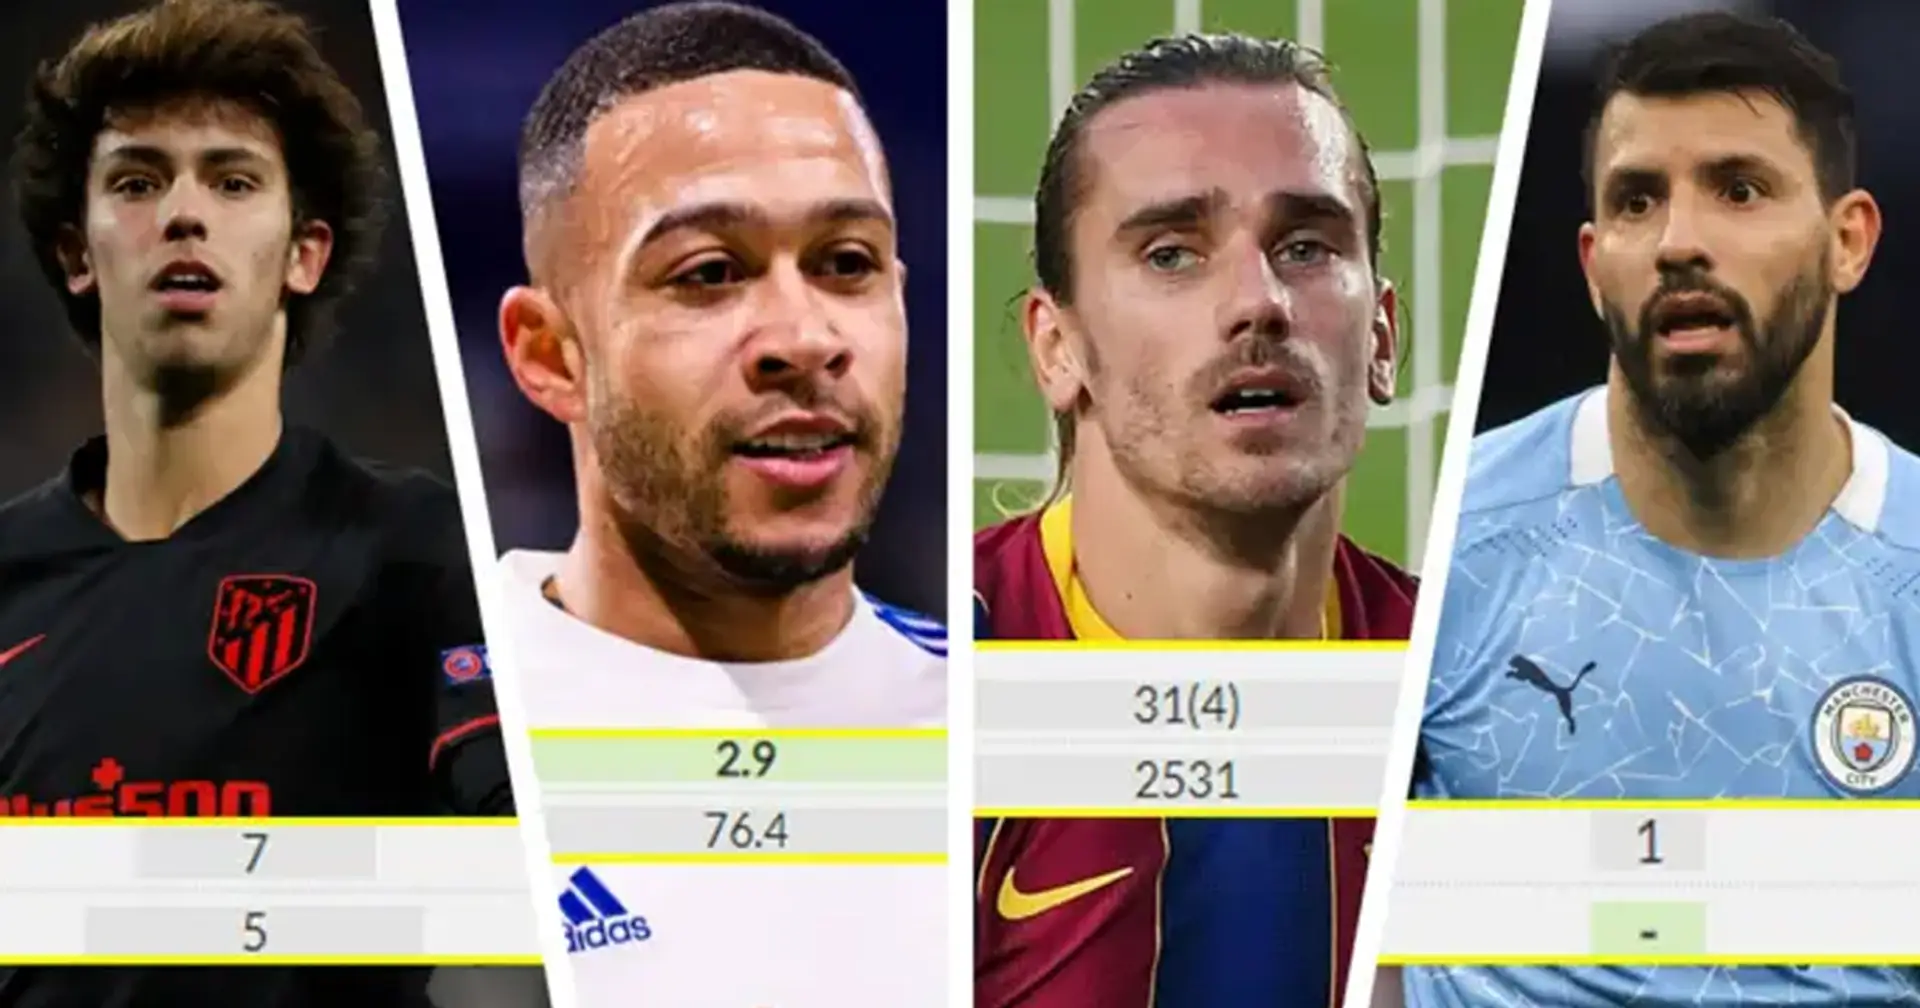 Comparamos los objetivos del Barça con Griezmann: mejor reemplazo estadísticamente identificado